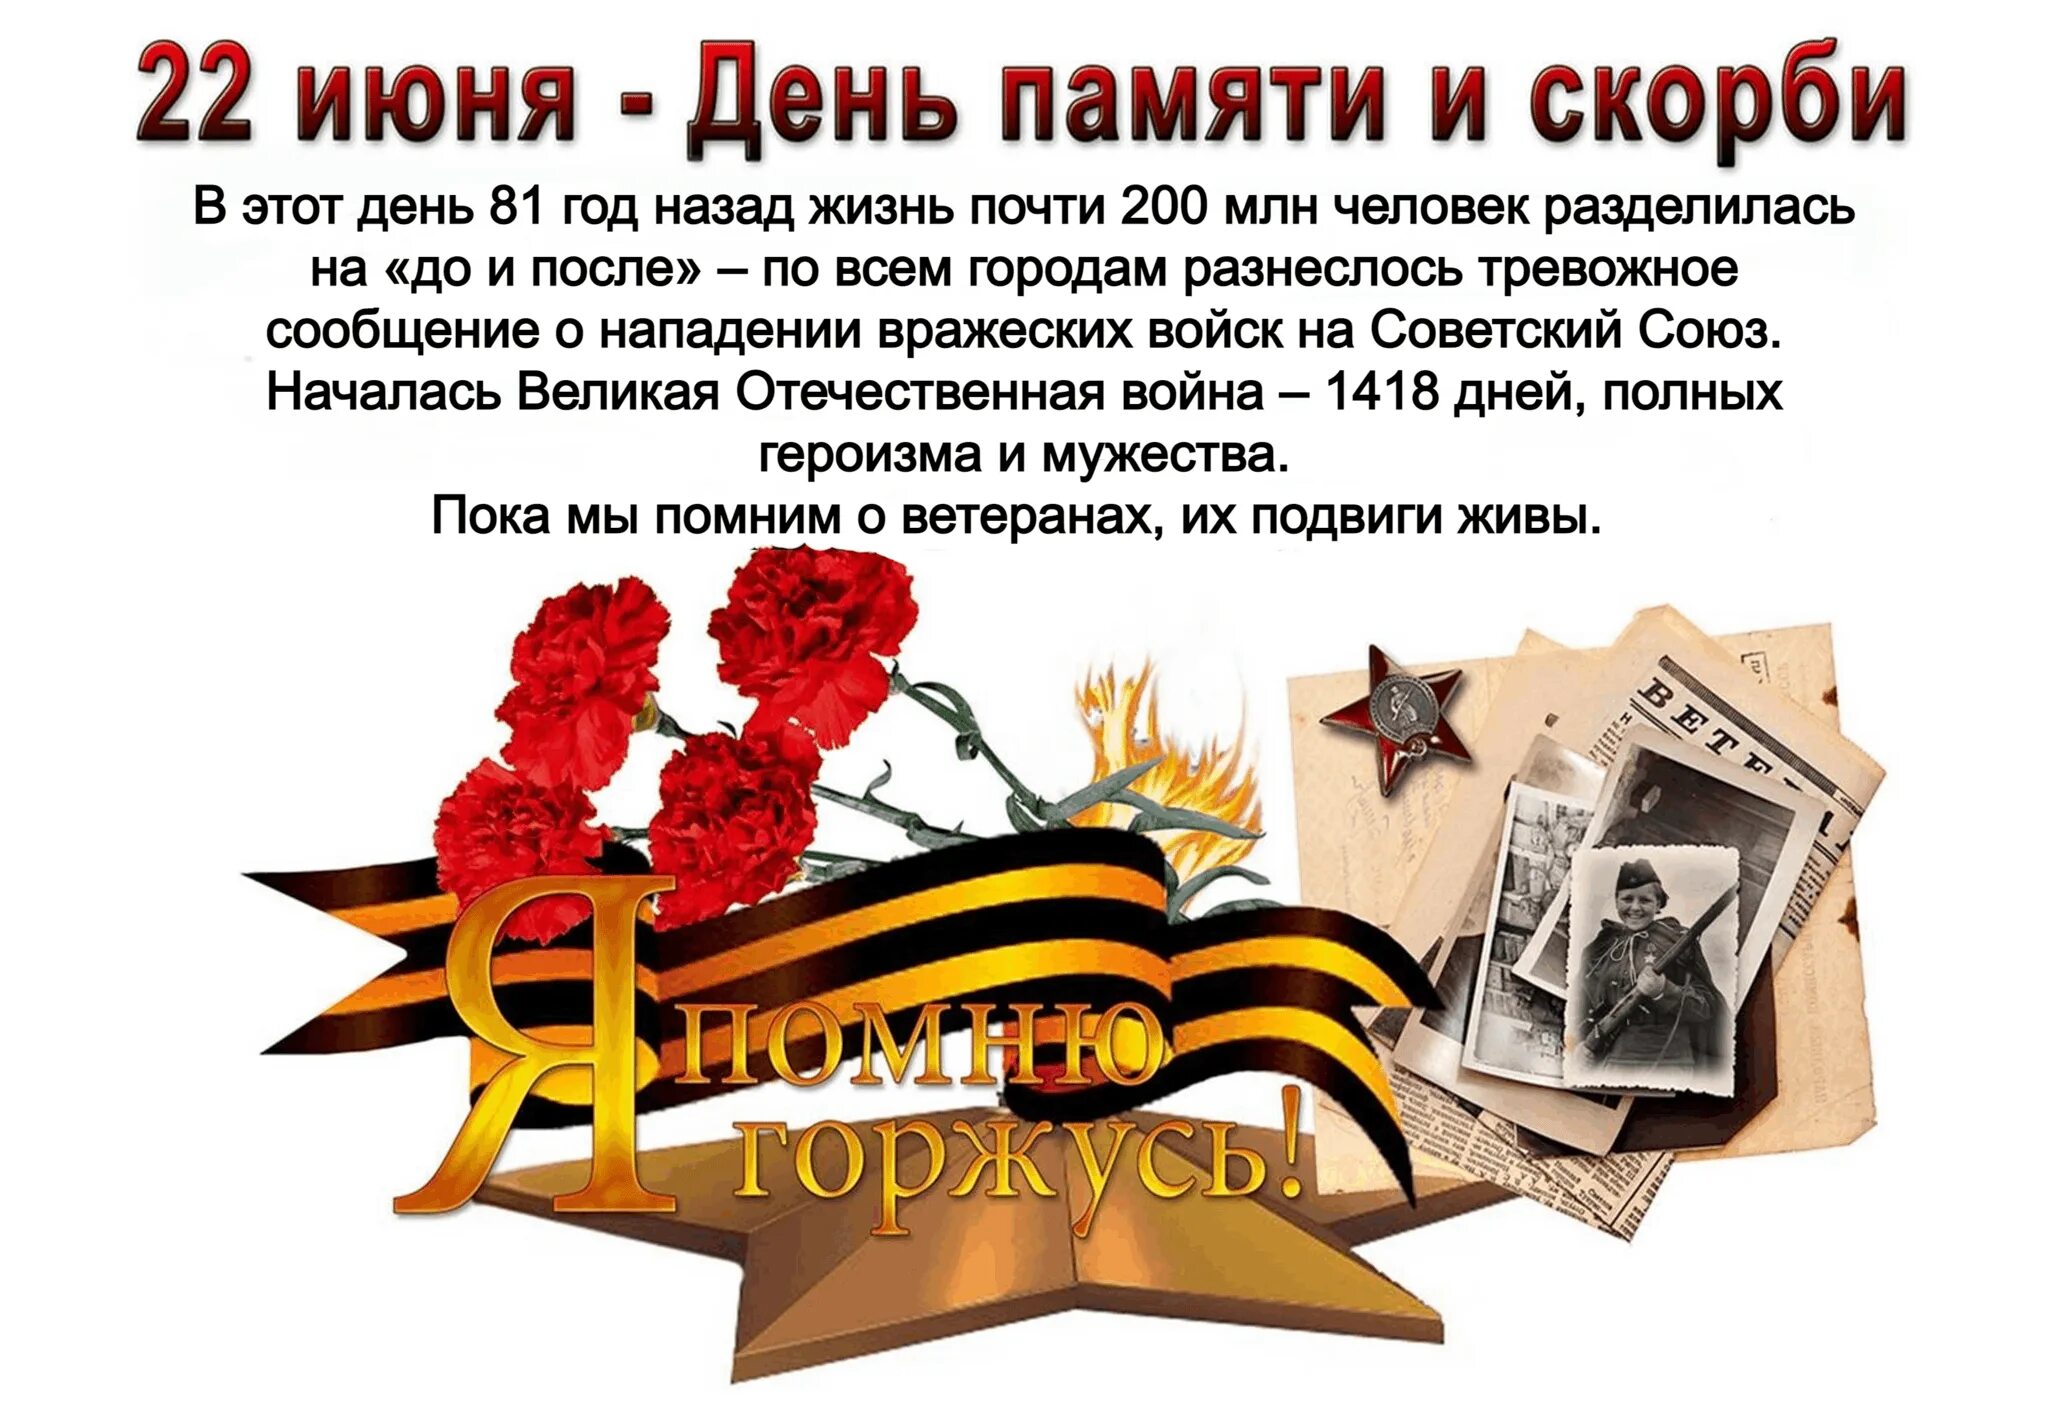 22 Июня день памяти. День памяти и скорби. День памяти и скорби — день начала Великой Отечественной войны. 22 Июня 1941 память.